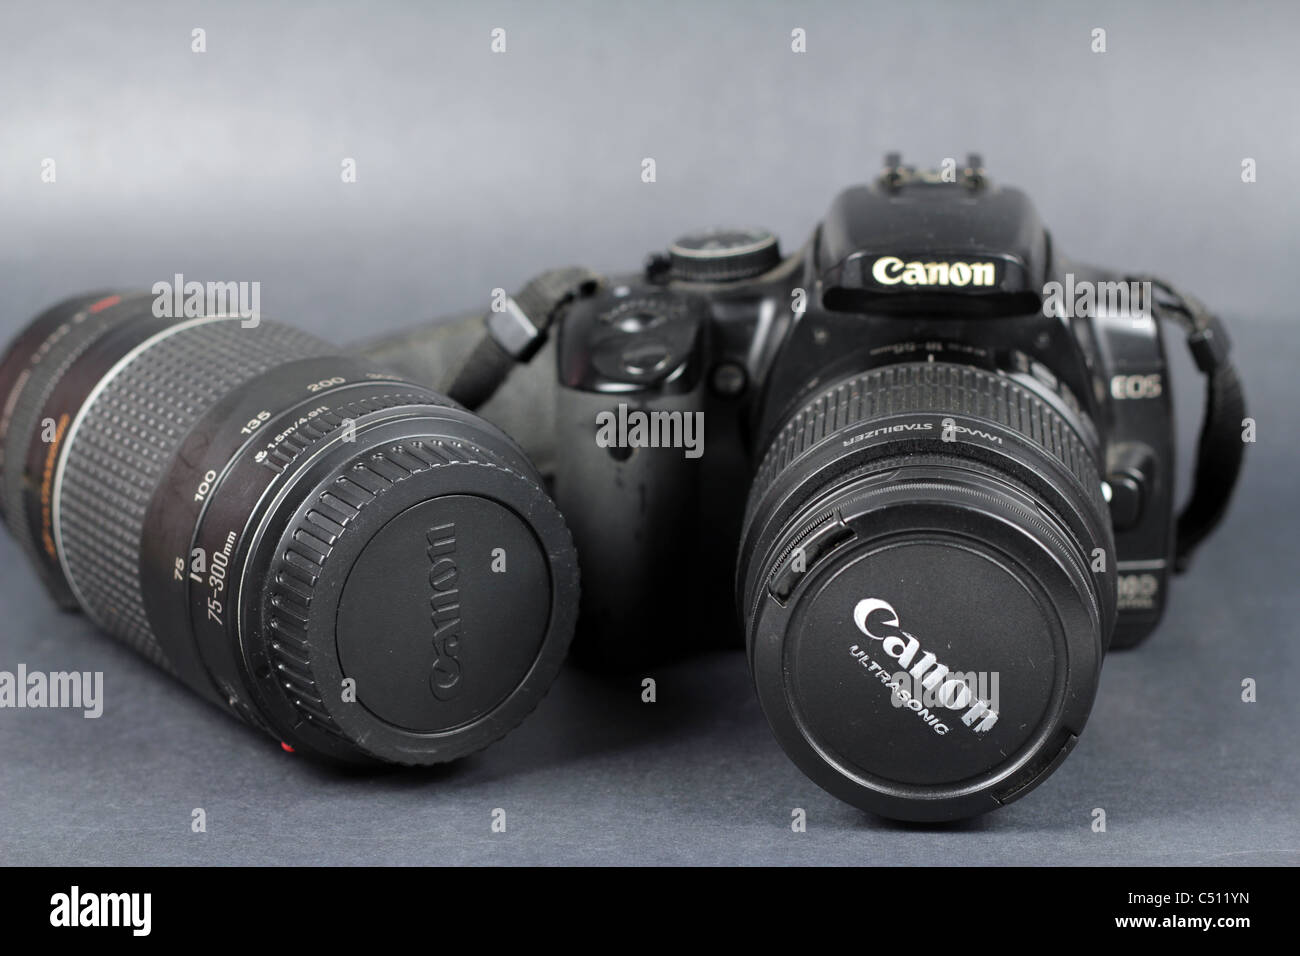 Fotocamere reflex digitali su sfondo isolato Foto Stock